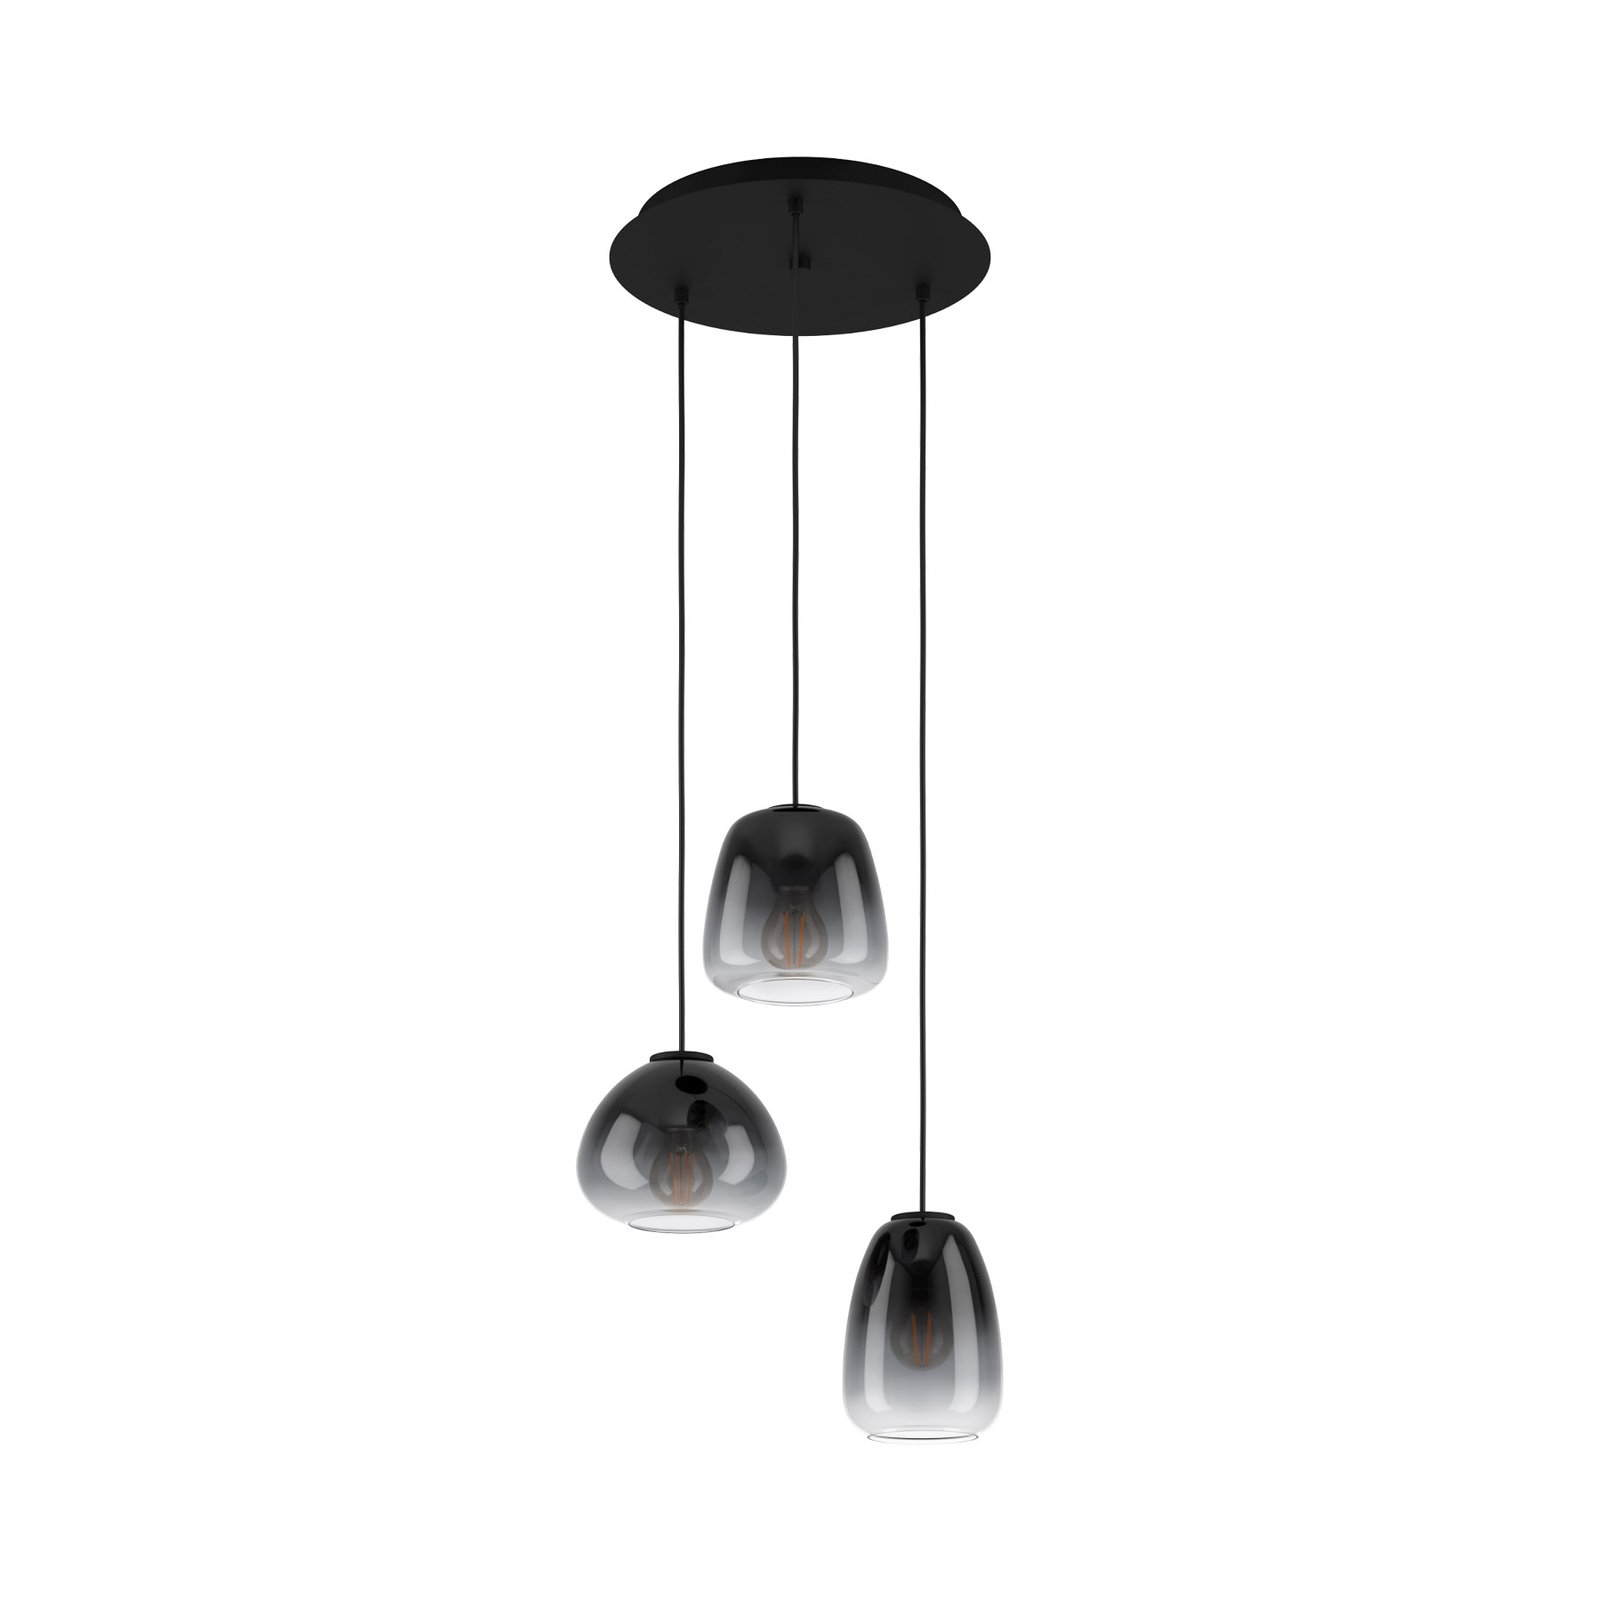 Hanglamp Aguilares, gerookt glas, 3-lamps rondel